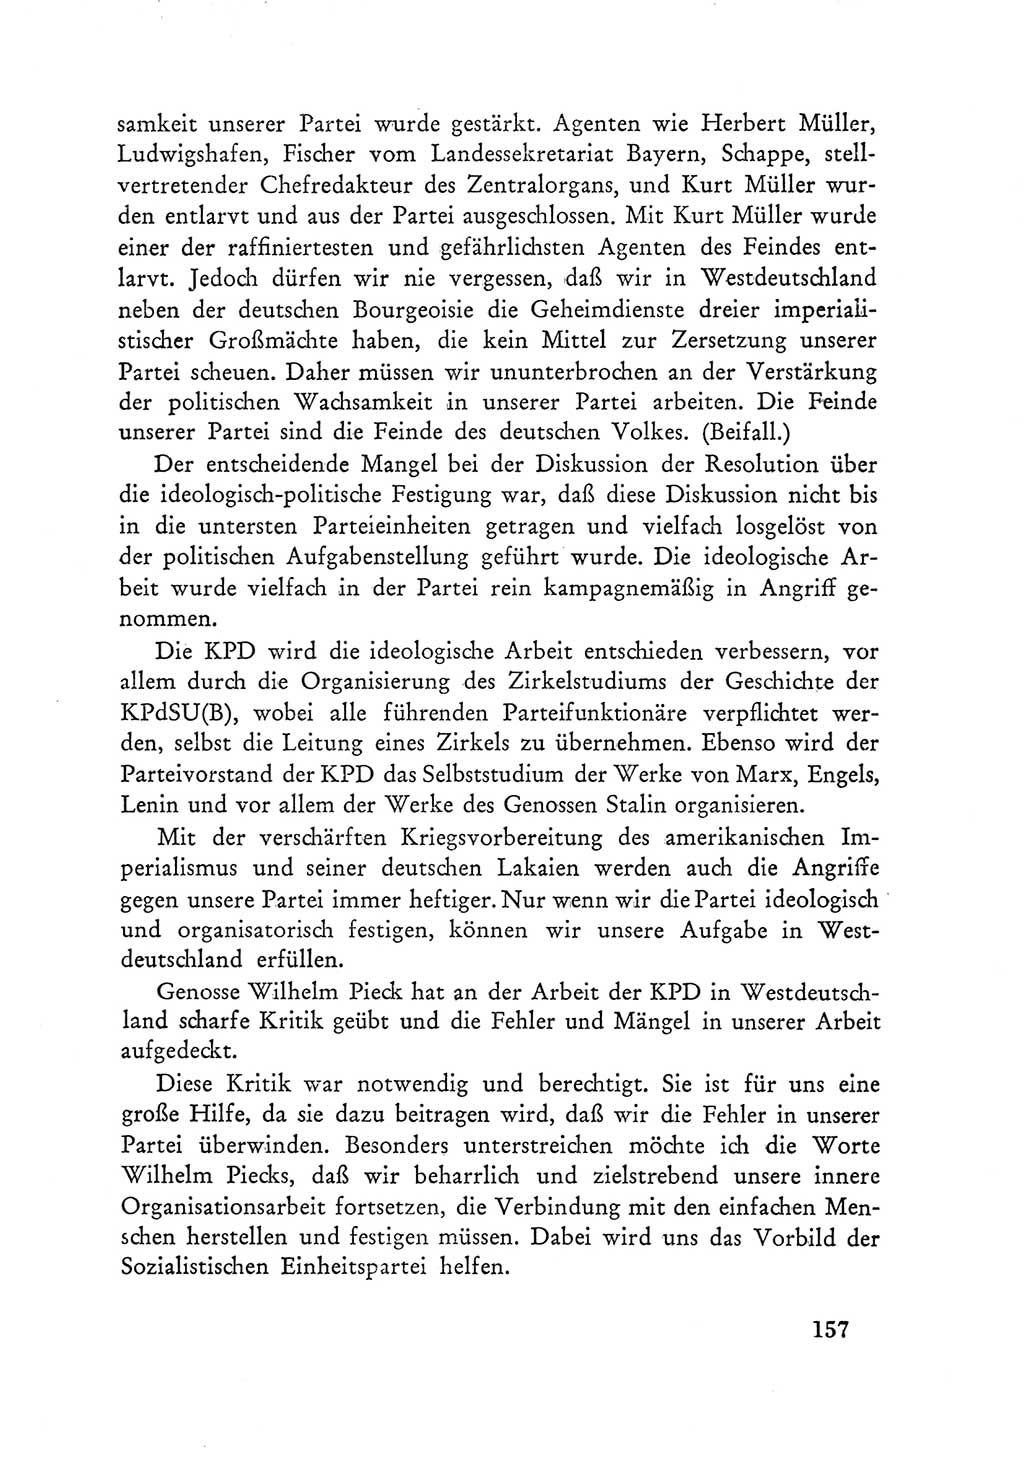 Protokoll der Verhandlungen des Ⅲ. Parteitages der Sozialistischen Einheitspartei Deutschlands (SED) [Deutsche Demokratische Republik (DDR)] 1950, Band 1, Seite 157 (Prot. Verh. Ⅲ. PT SED DDR 1950, Bd. 1, S. 157)